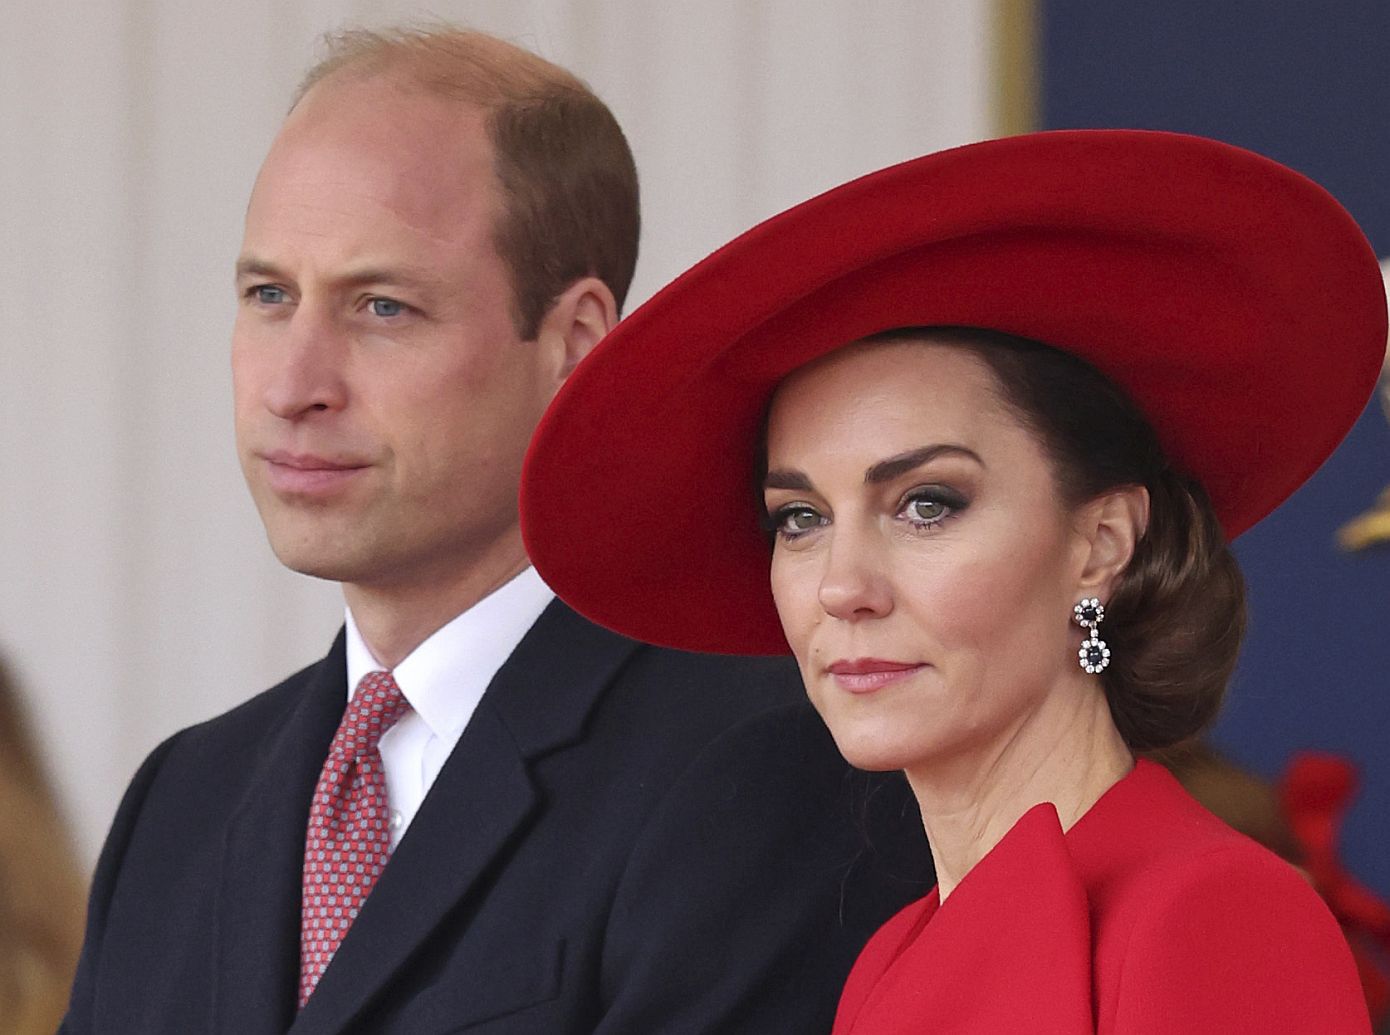 Τι συμβαίνει με την Κέιτ Μίντλετον και τον πρίγκιπα Ουίλιαμ και γιατί η βασιλική οικογένεια δεν βάζει τέλος στις ακραίες εικασίες